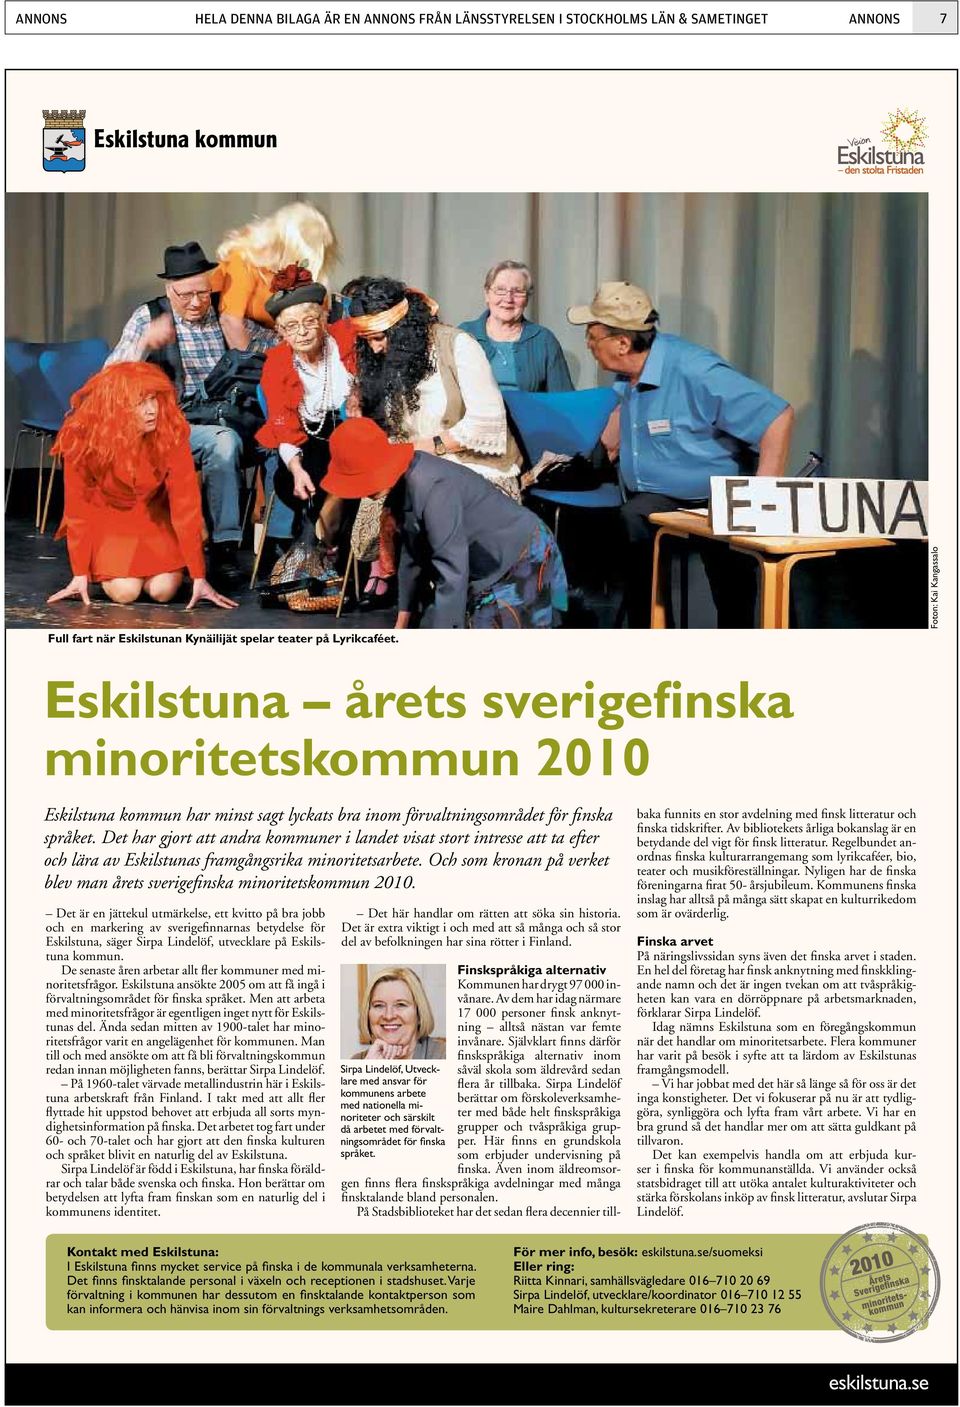 Det har gjort att andra kommuner i landet visat stort intresse att ta efter och lära av Eskilstunas framgångsrika minoritetsarbete.